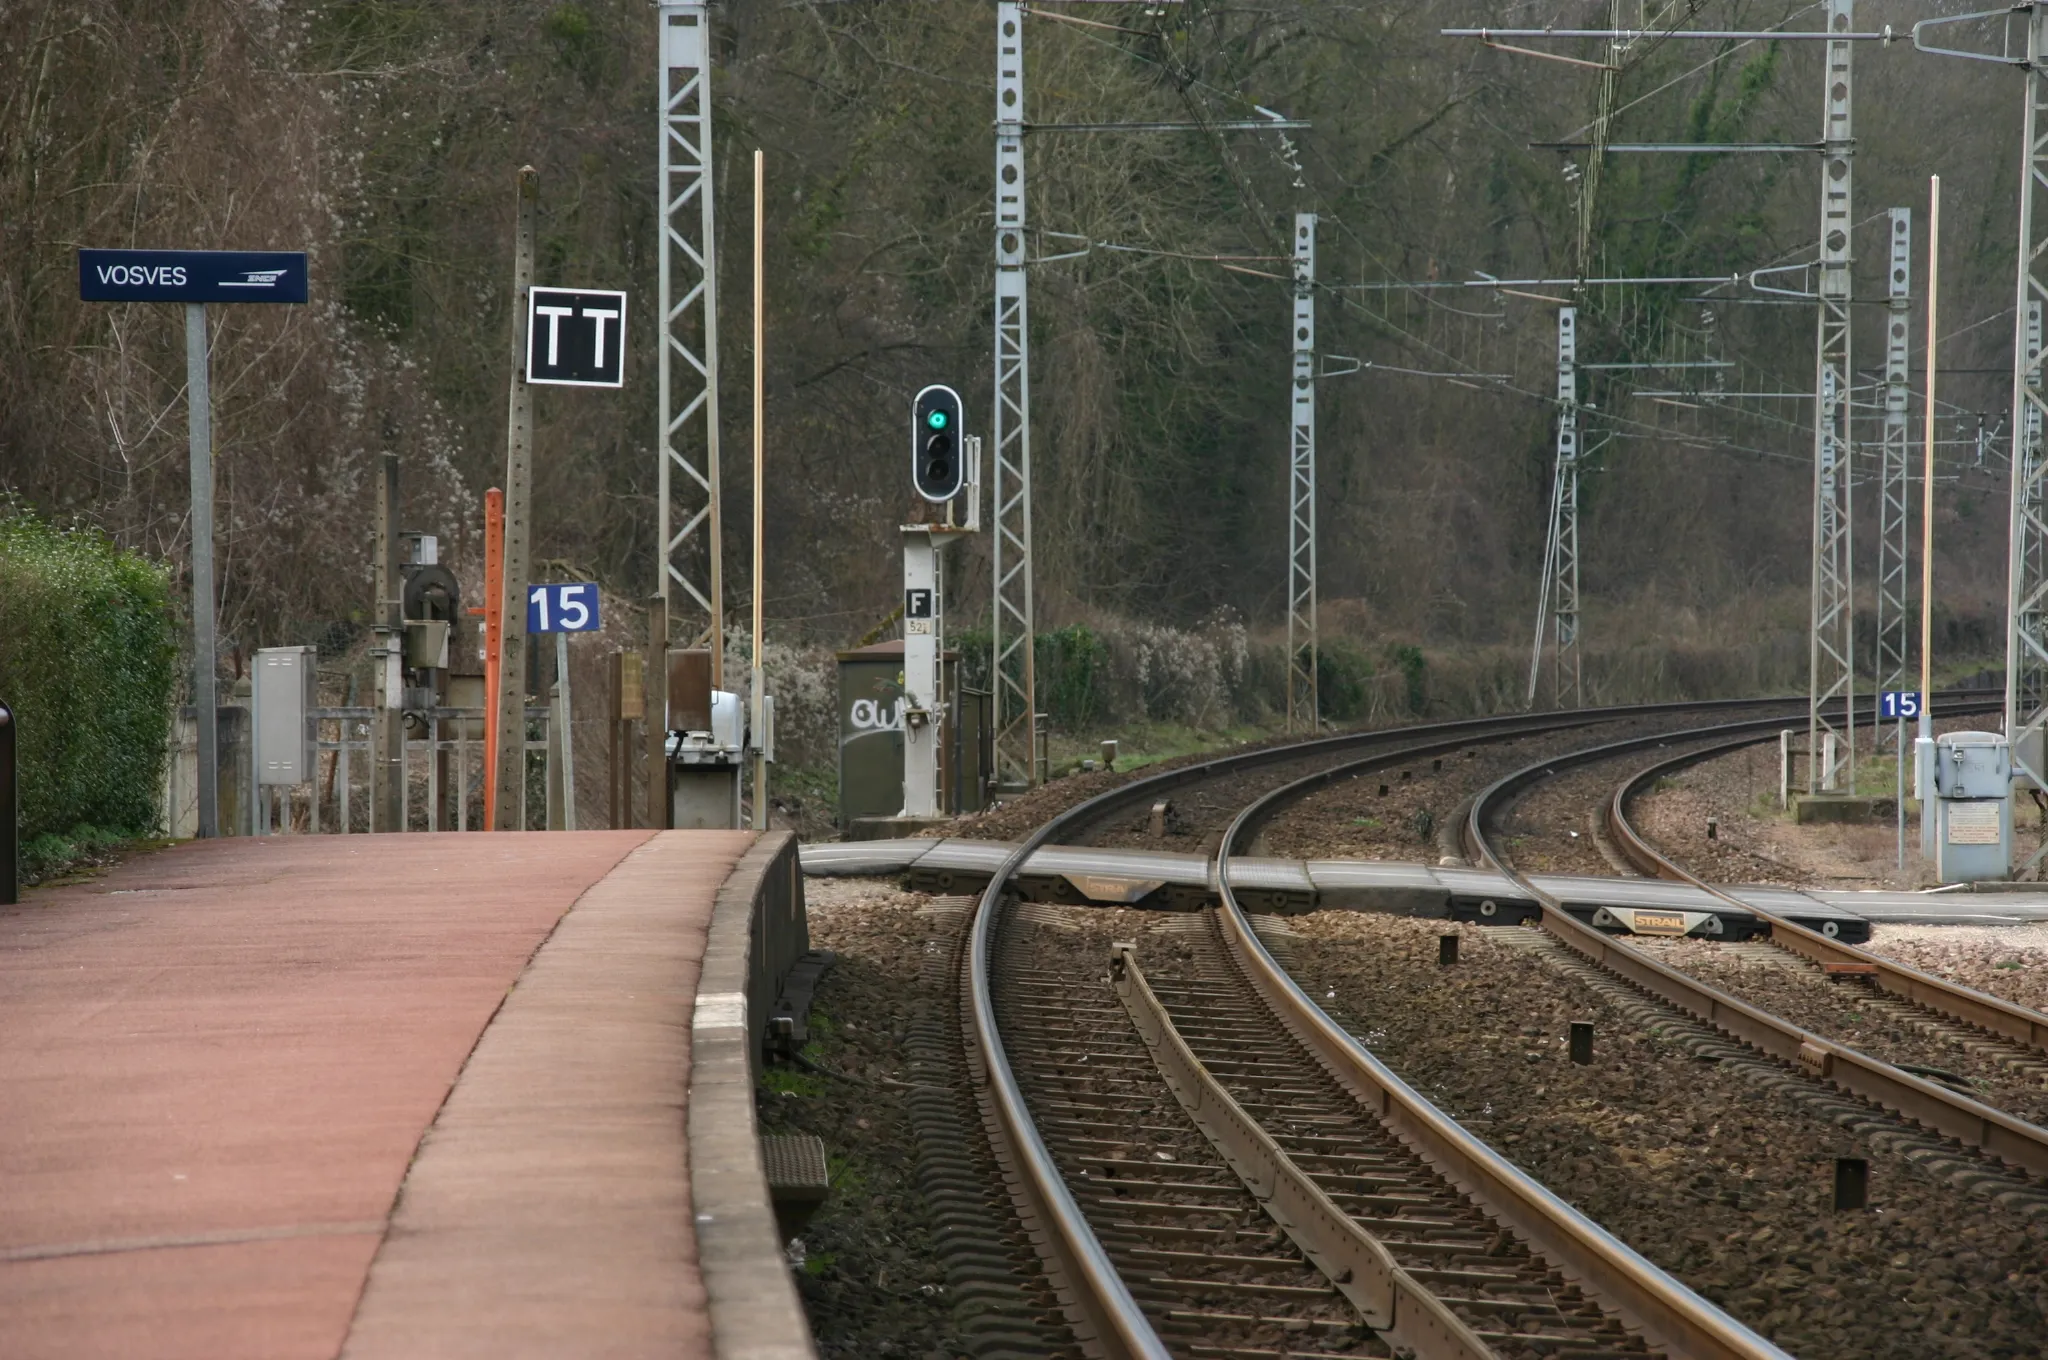 Photo showing: La gare de Vosves,  Dammarie-lès-Lys, département de la  Seine-et-Marne (France)